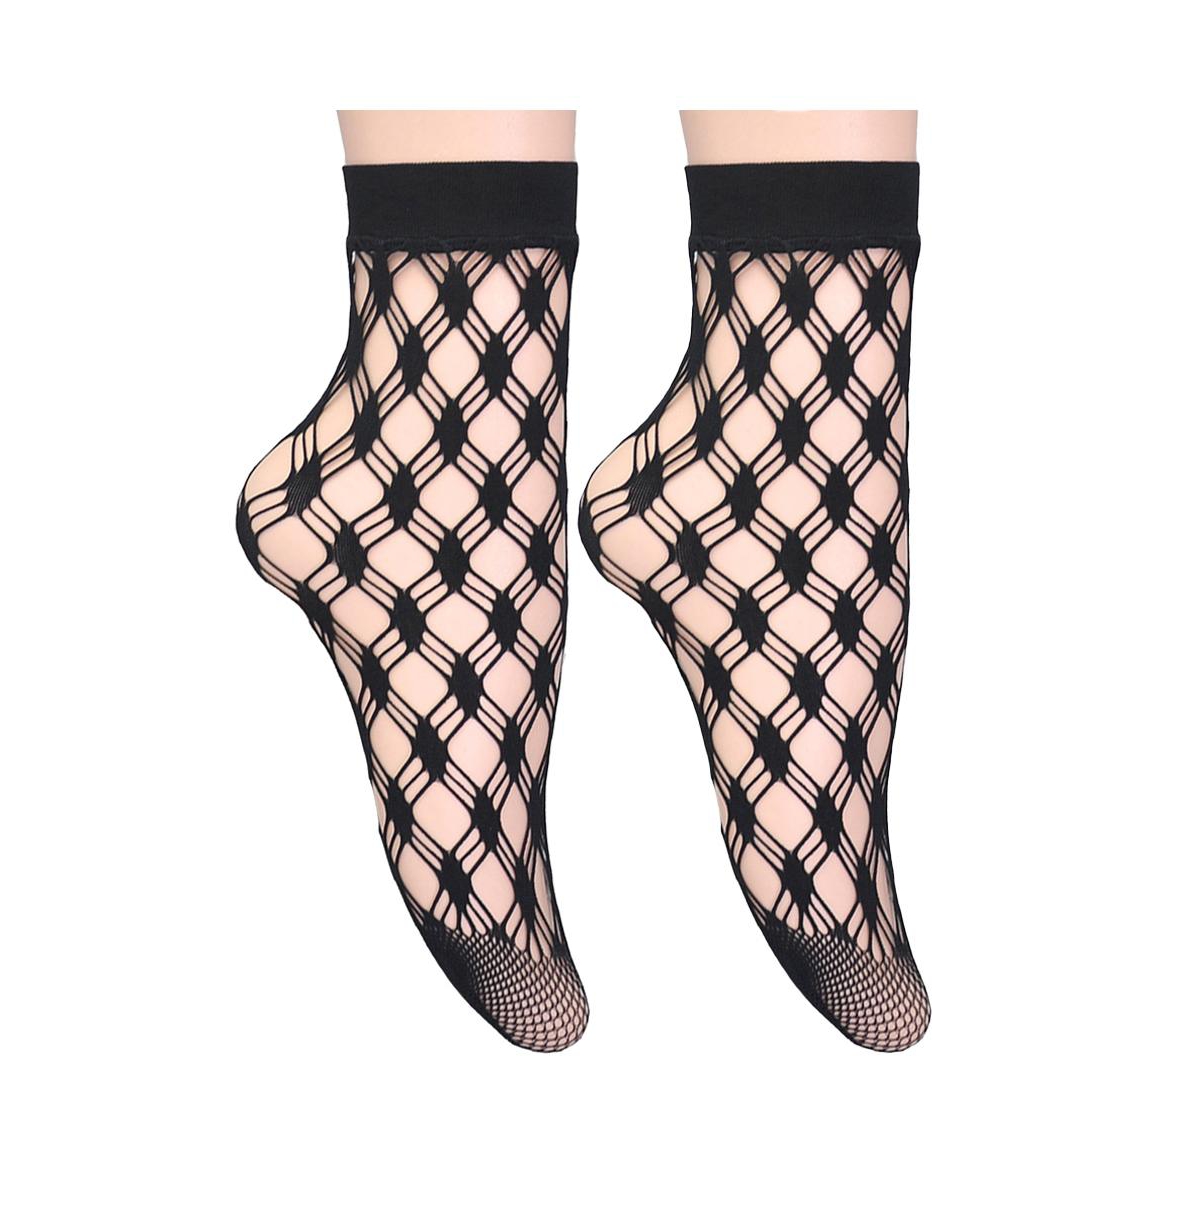 Women's Lattice Net Fishnet Socks - Pack of 2 - Black